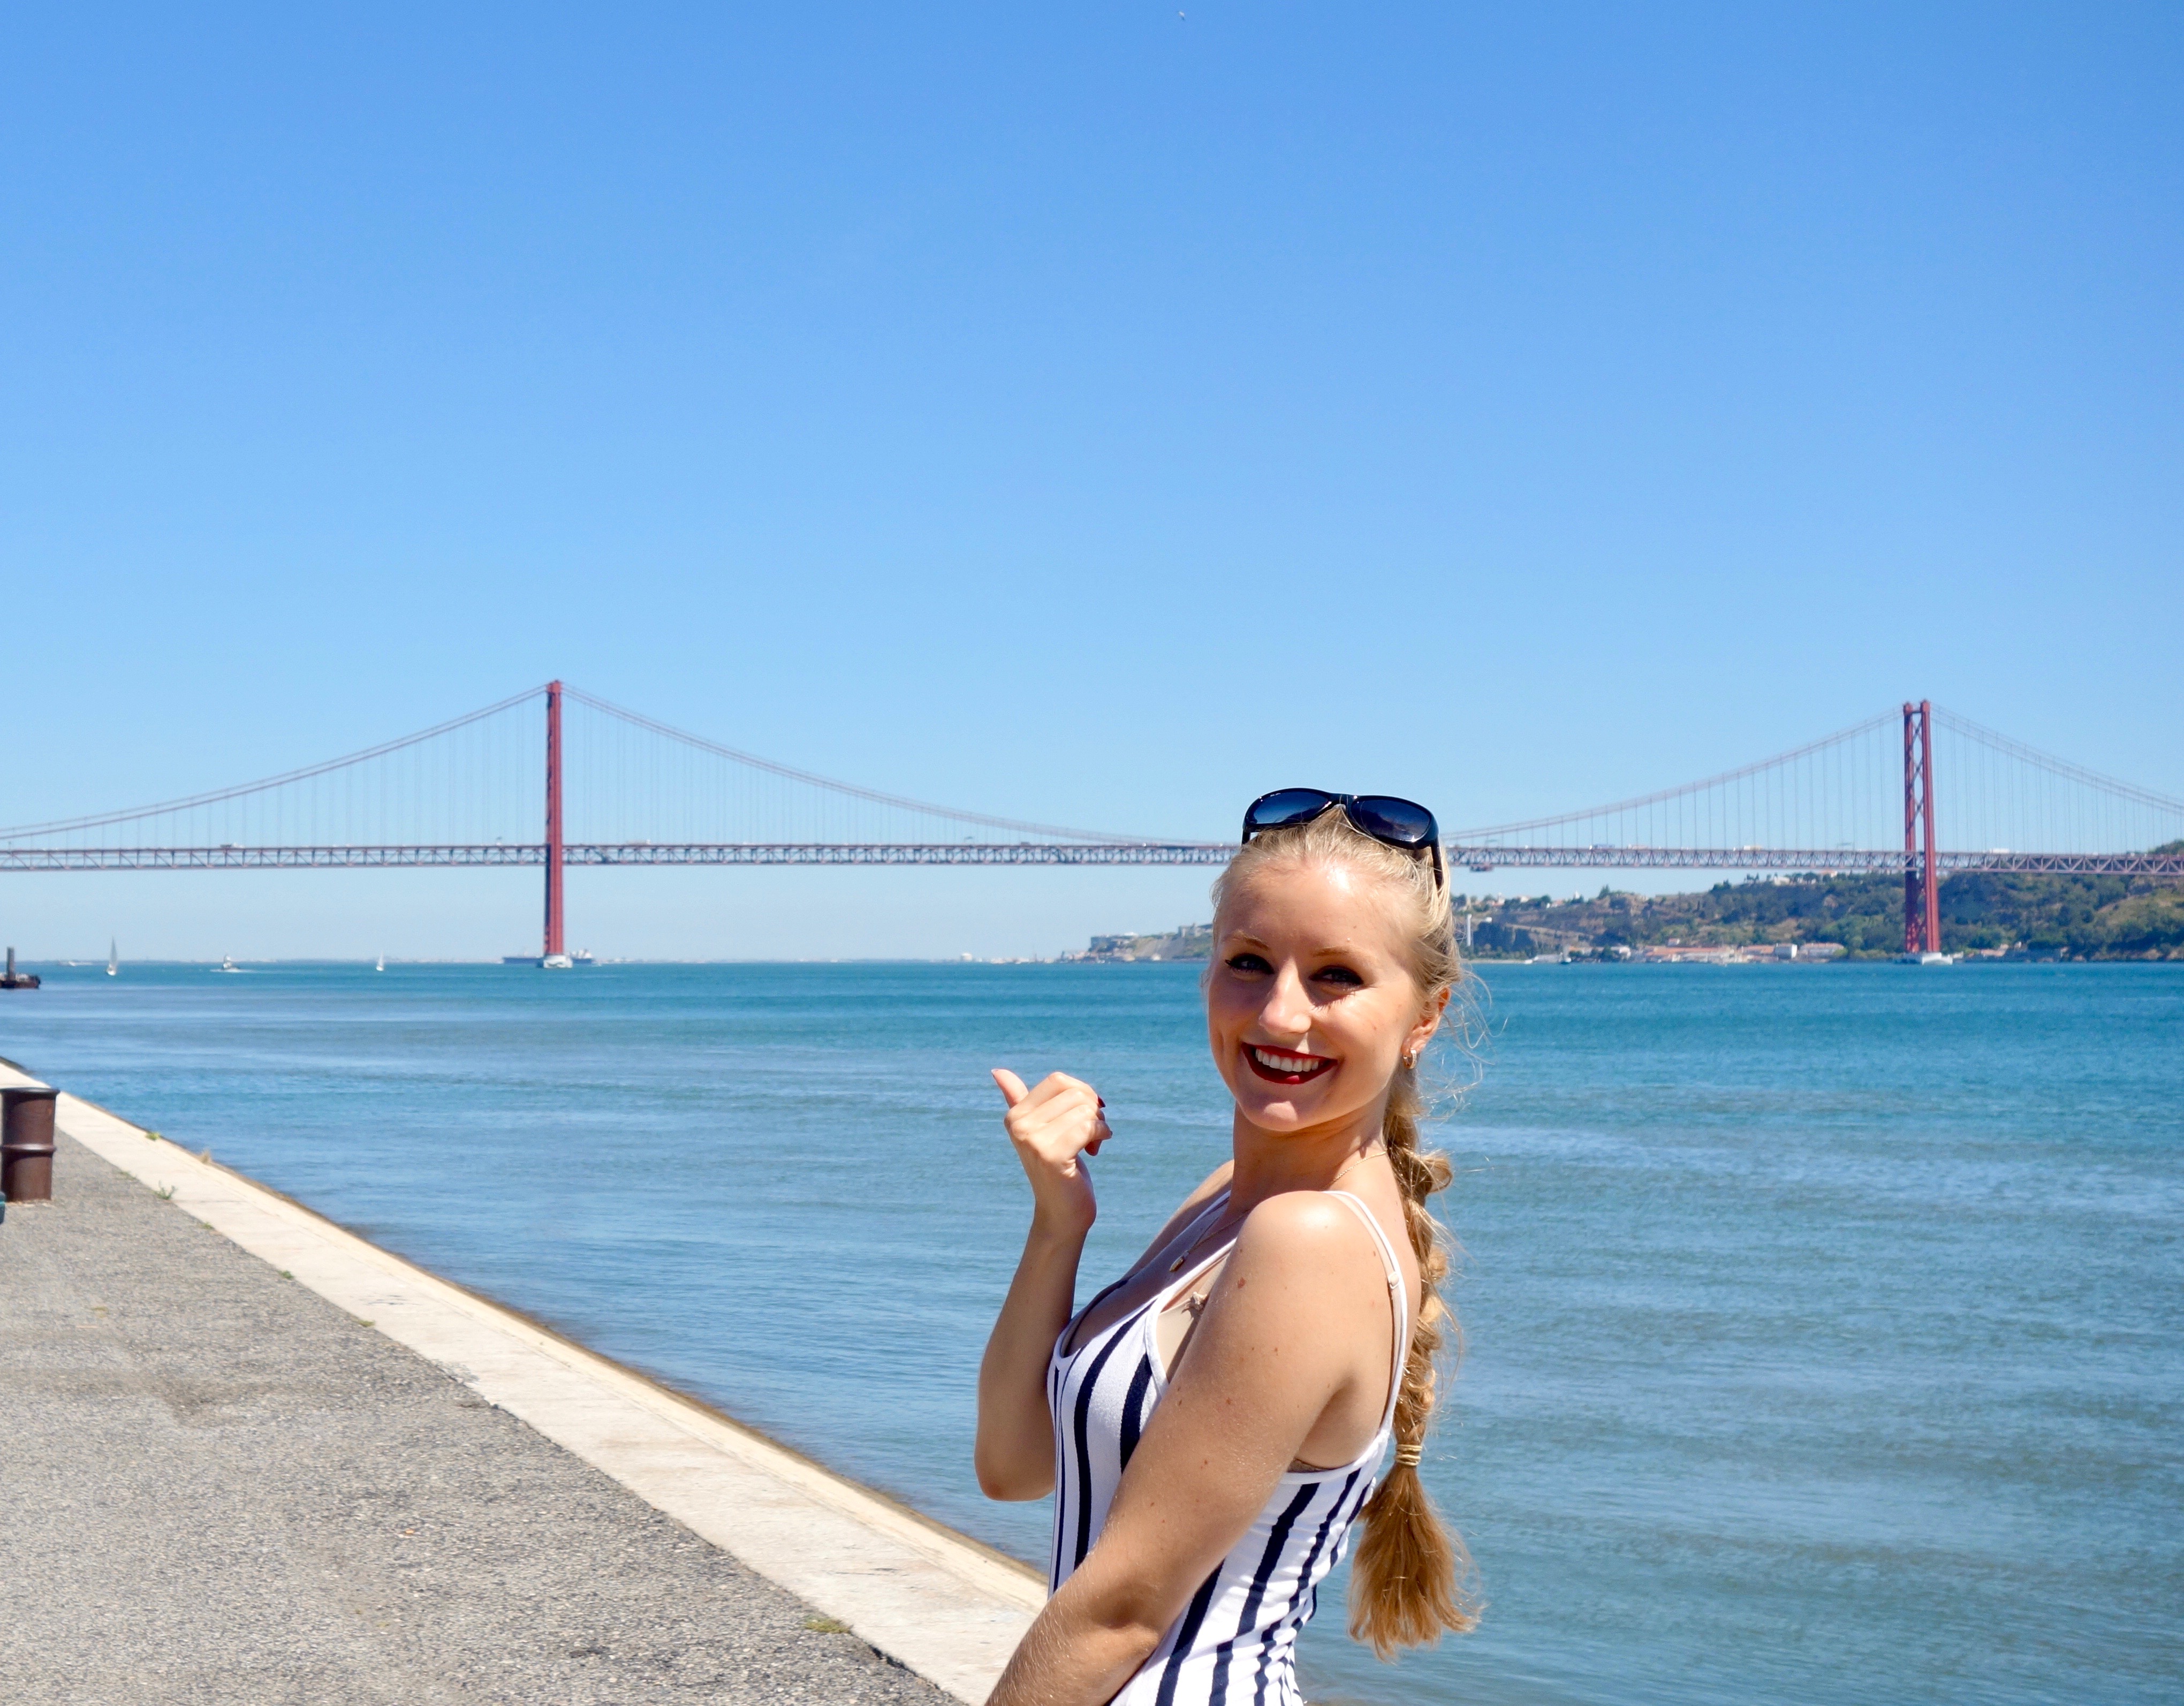 Lissabon : Ponte 25 de Abril (ähnelt der Golden Gate Bridge in San Francisco, USA)